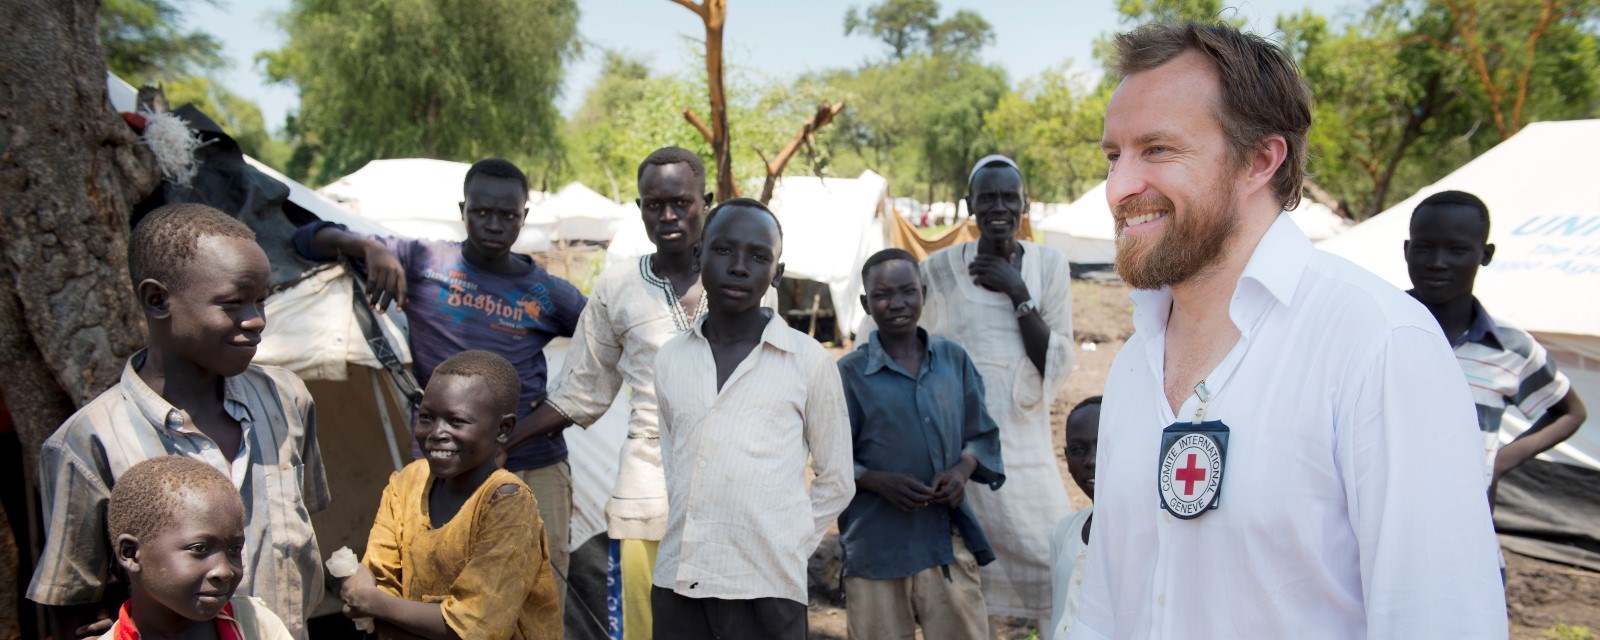 En europeisk mann med skjegg står sammen med 10 unge og eldre afrikanske menn